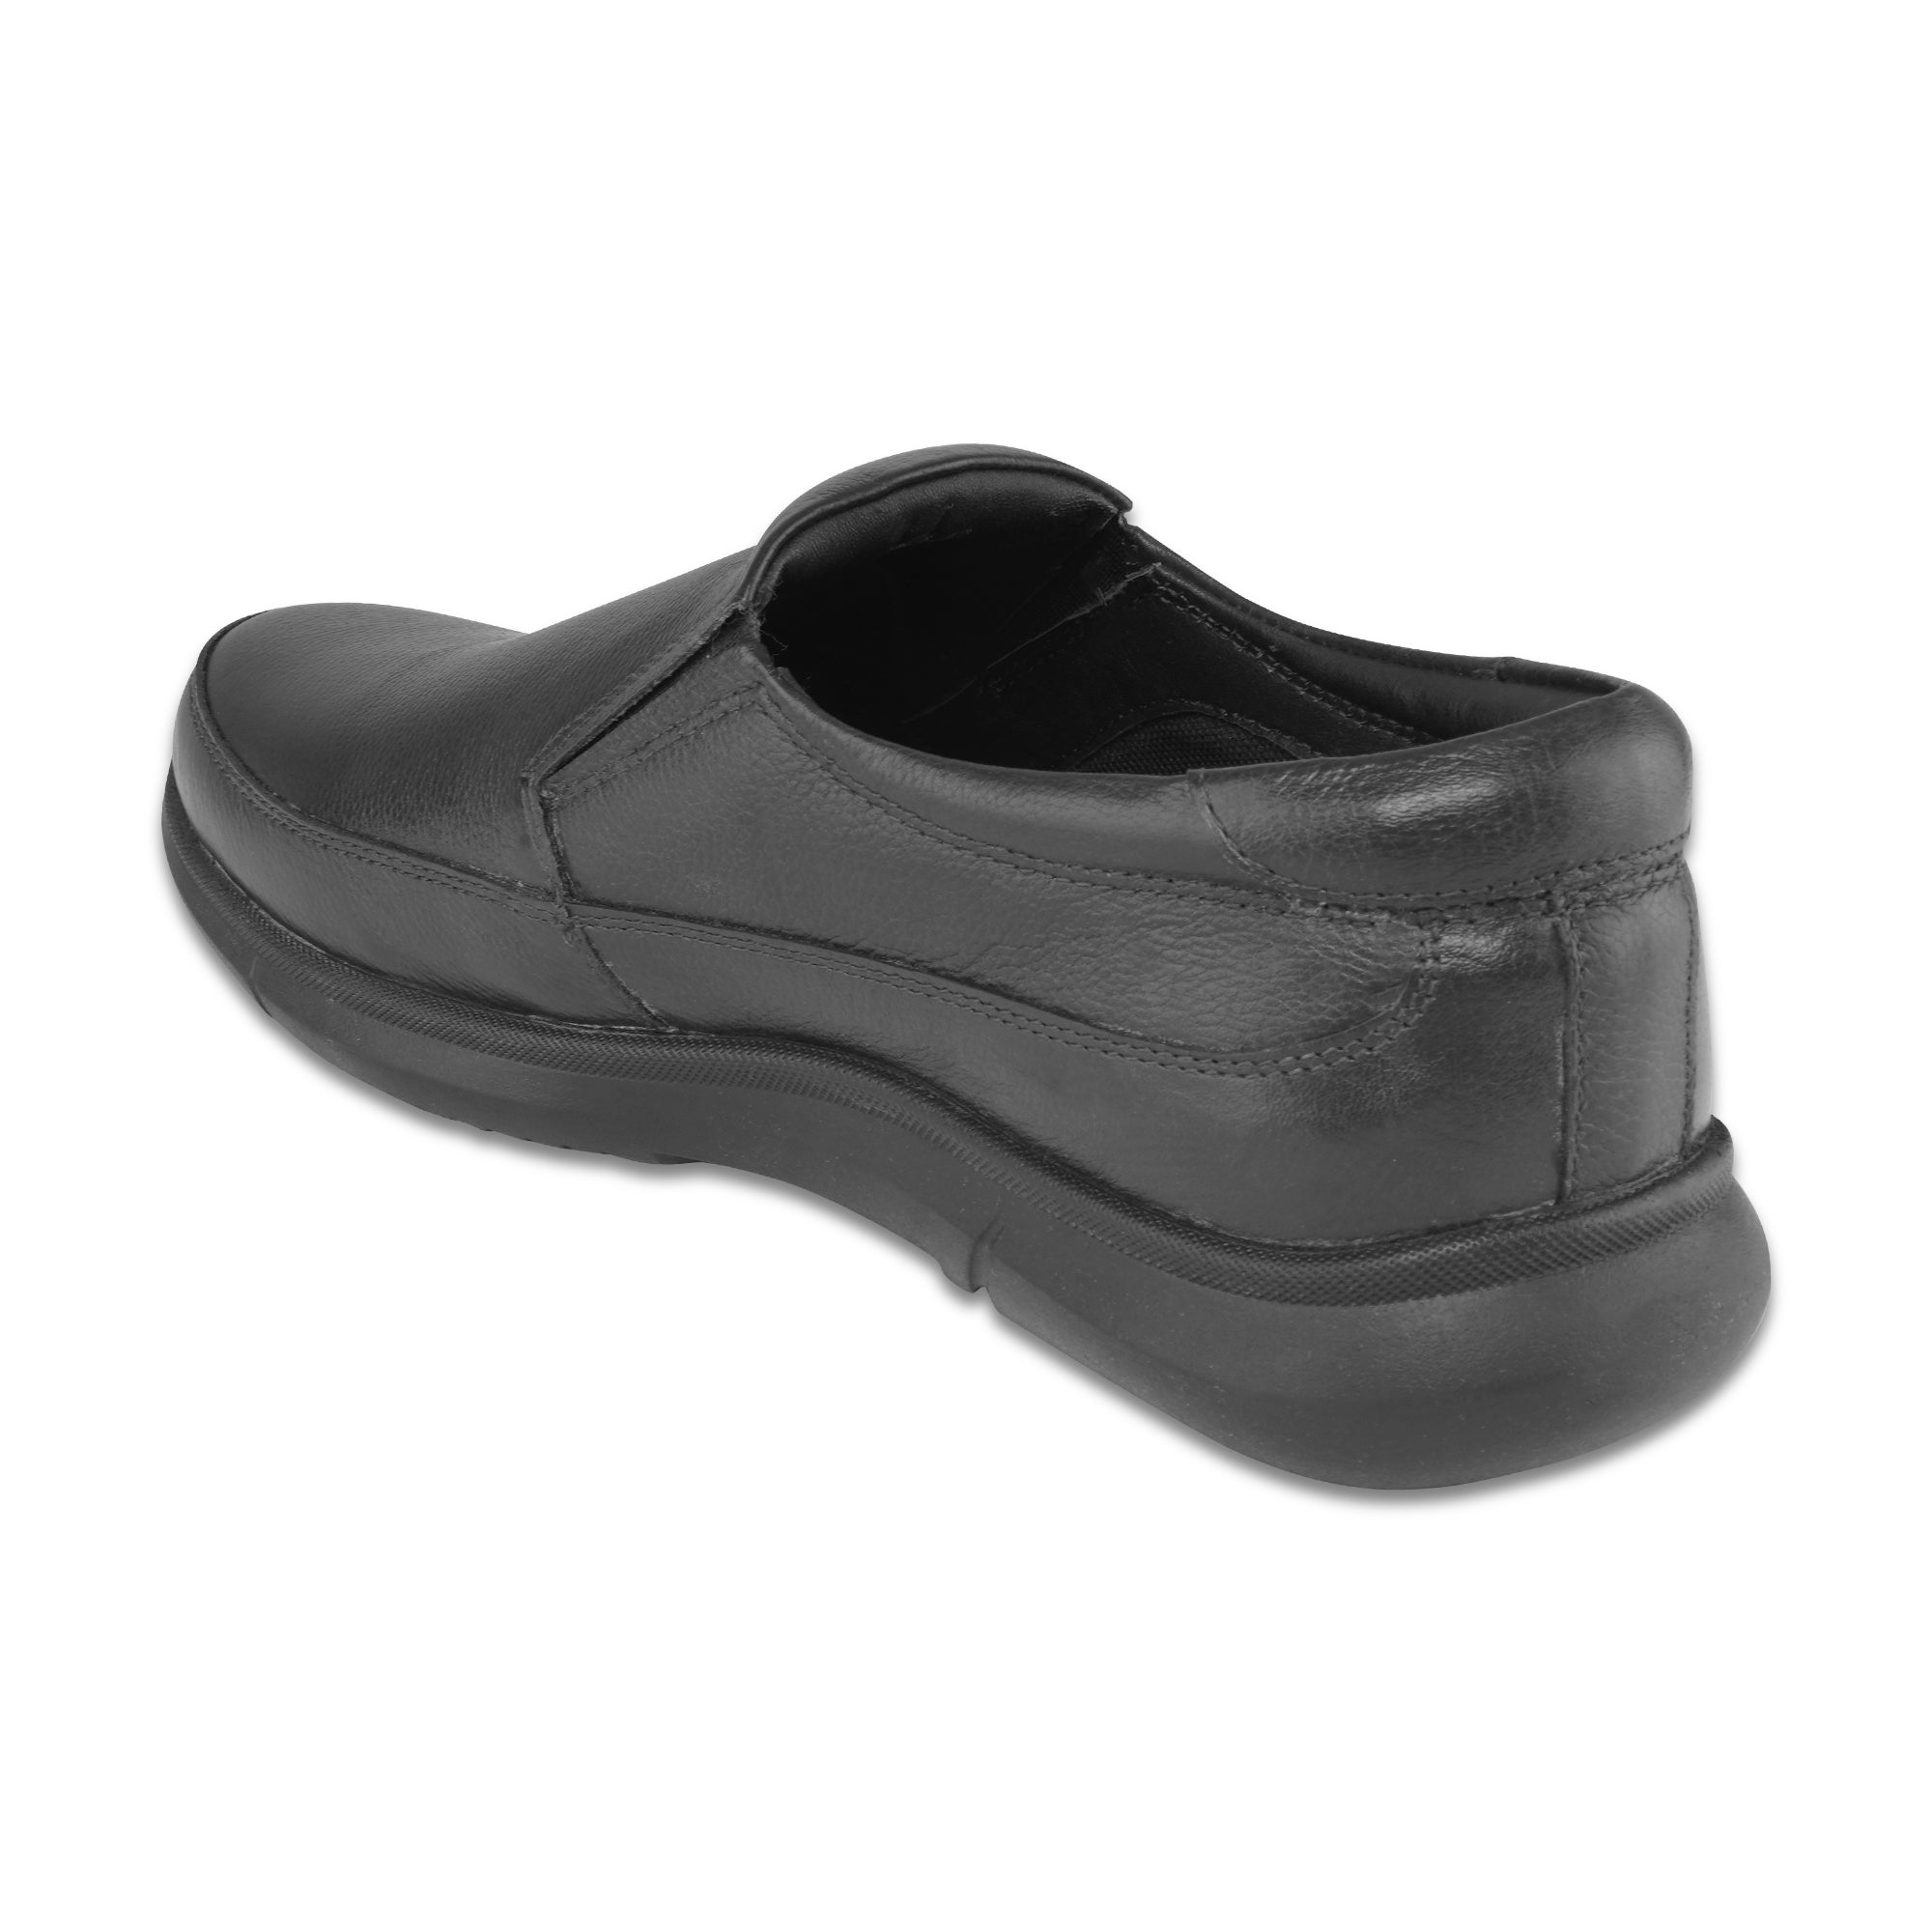 Ezok Men Black Casual Leather Shoes For Men